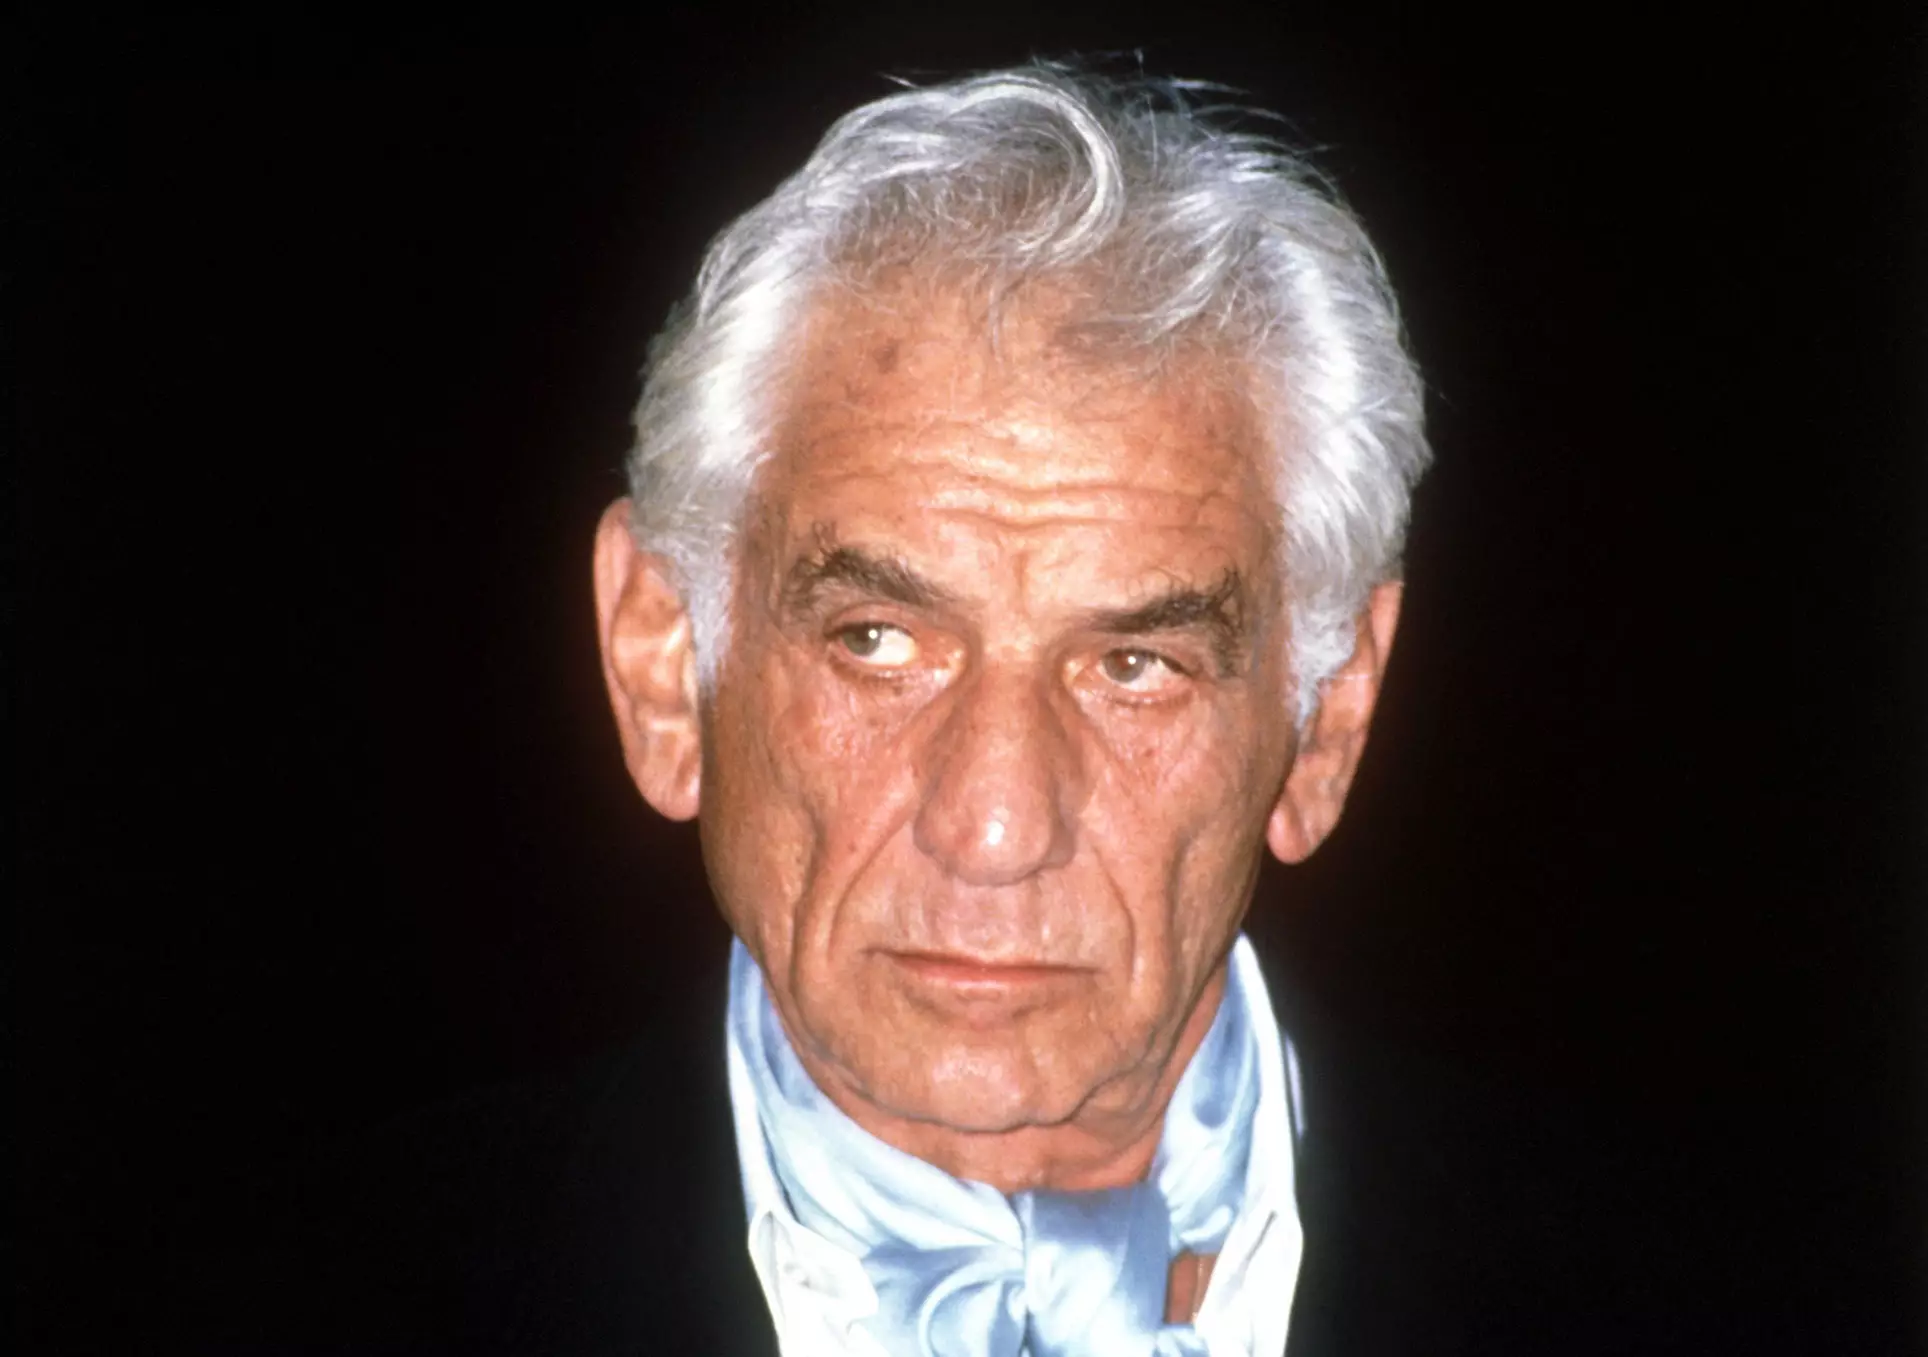 Composer Leonard Bernstein pictured in 1985.